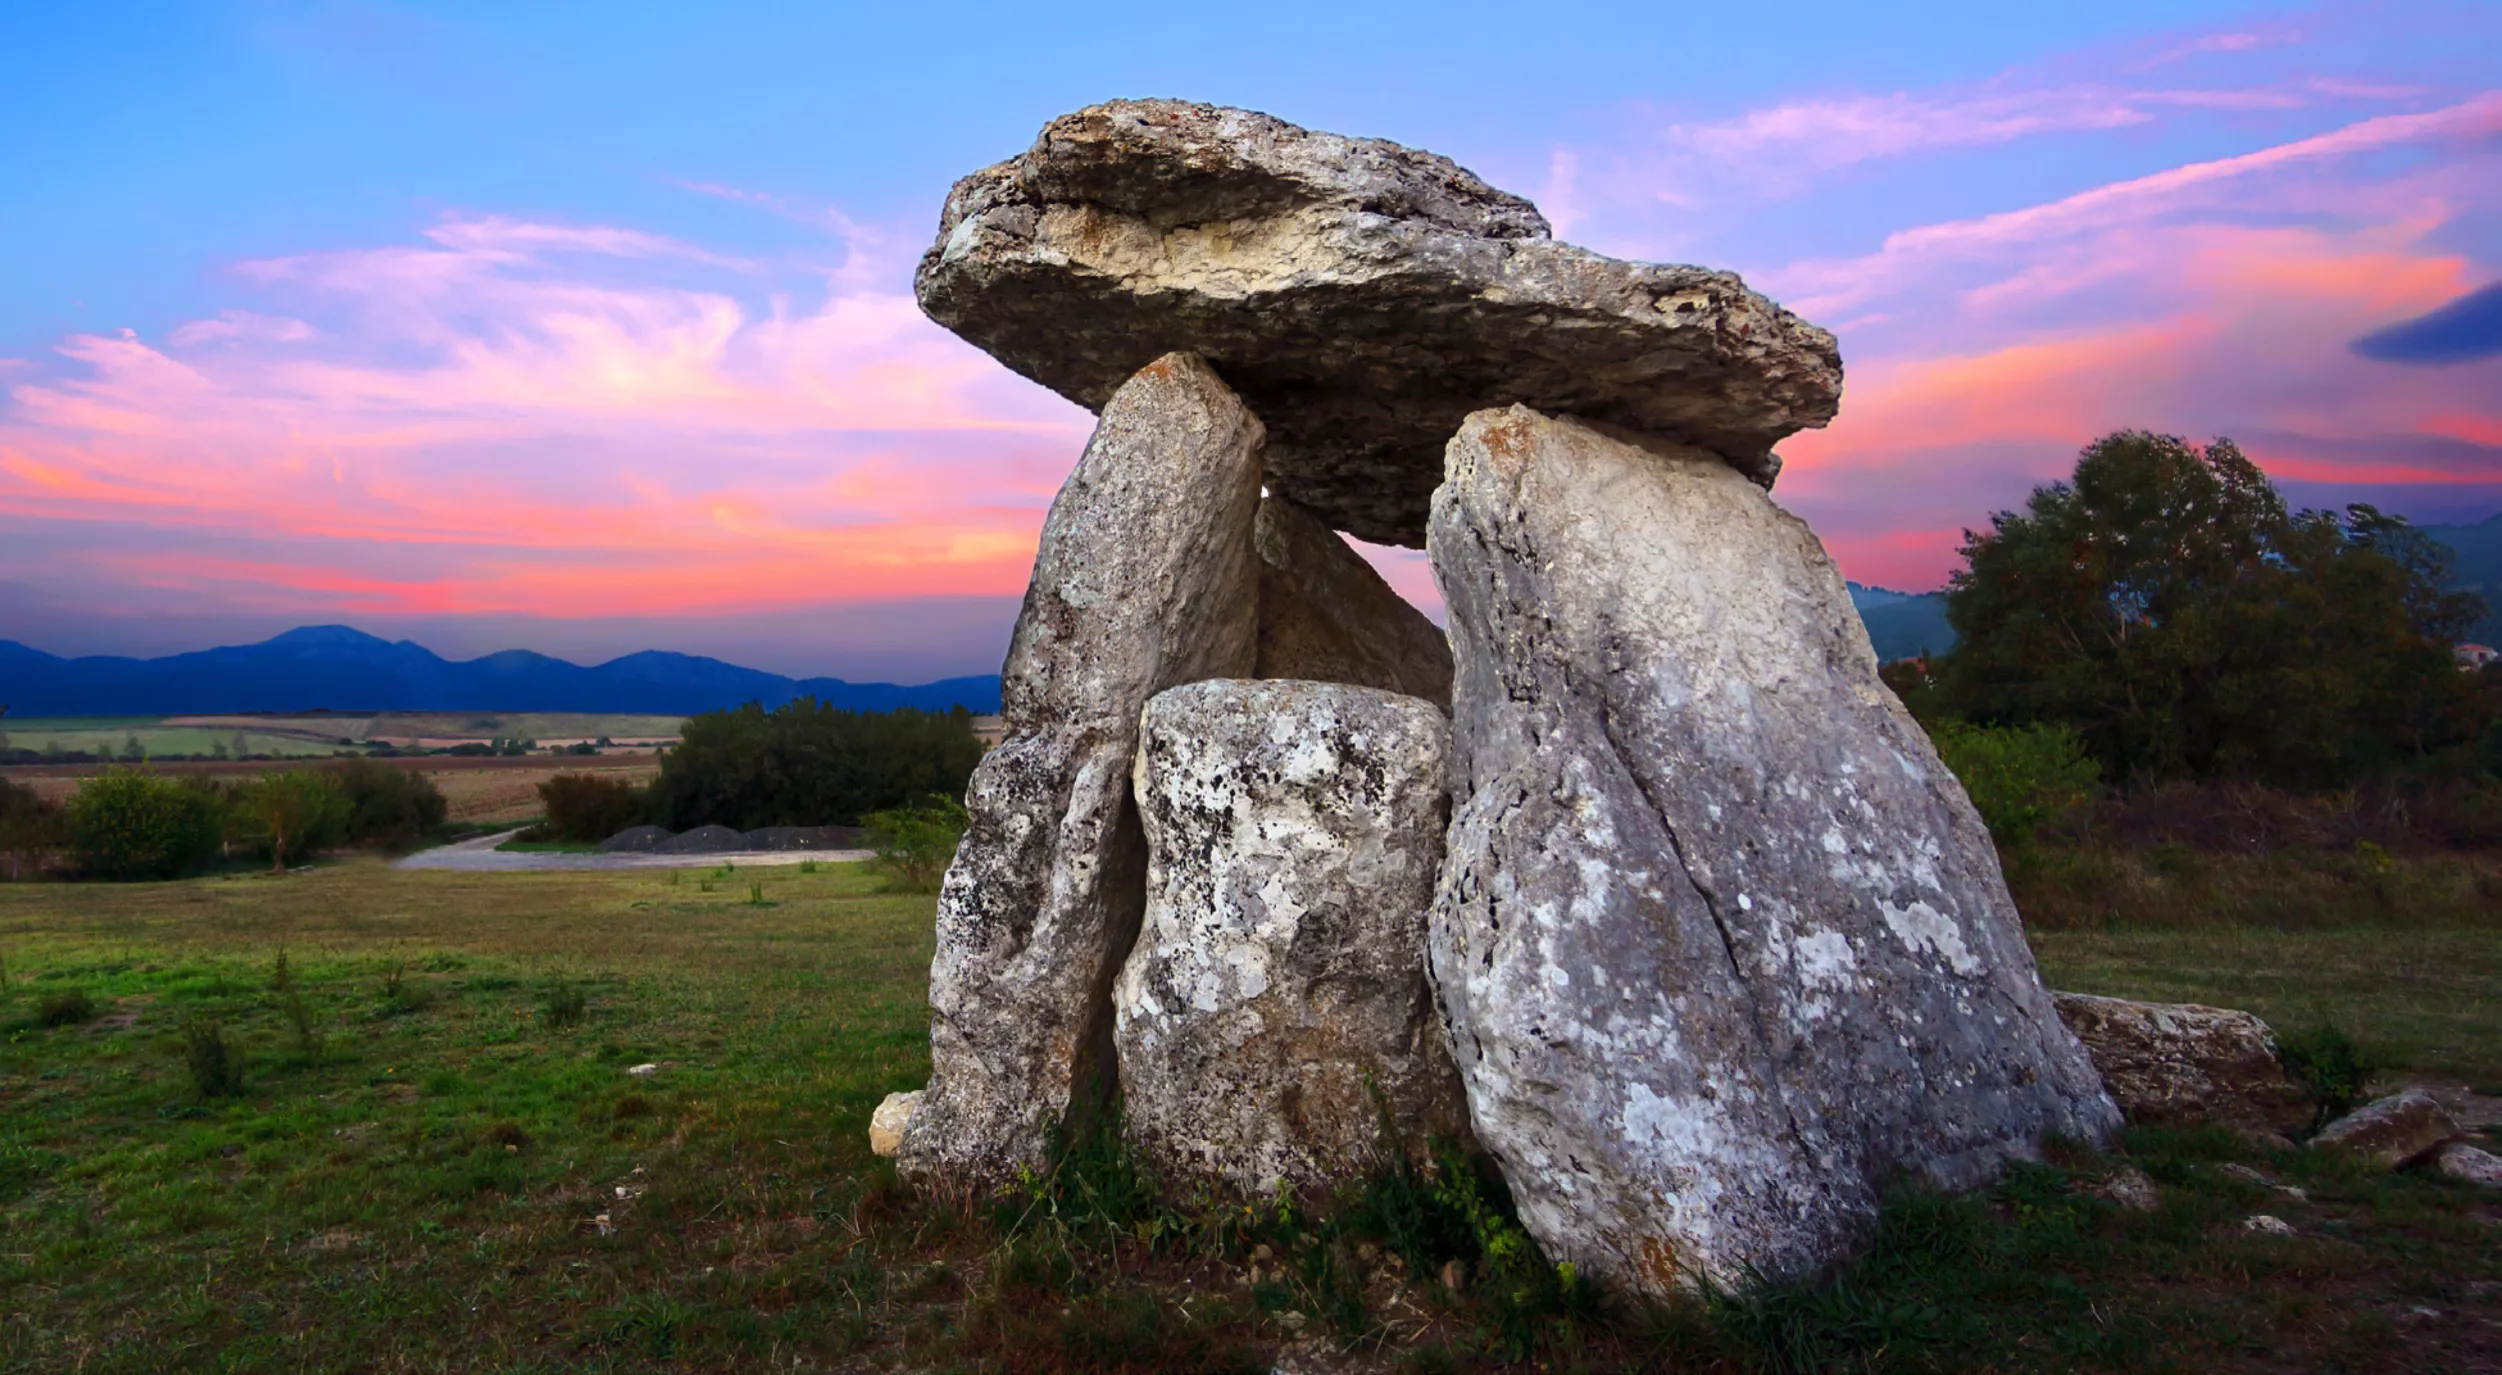 El dolmen de Sorginetxe és un dels monuments megalítics més ben conservats d'Euskadi. Data del 2500 aC i va ser descobert el 1831